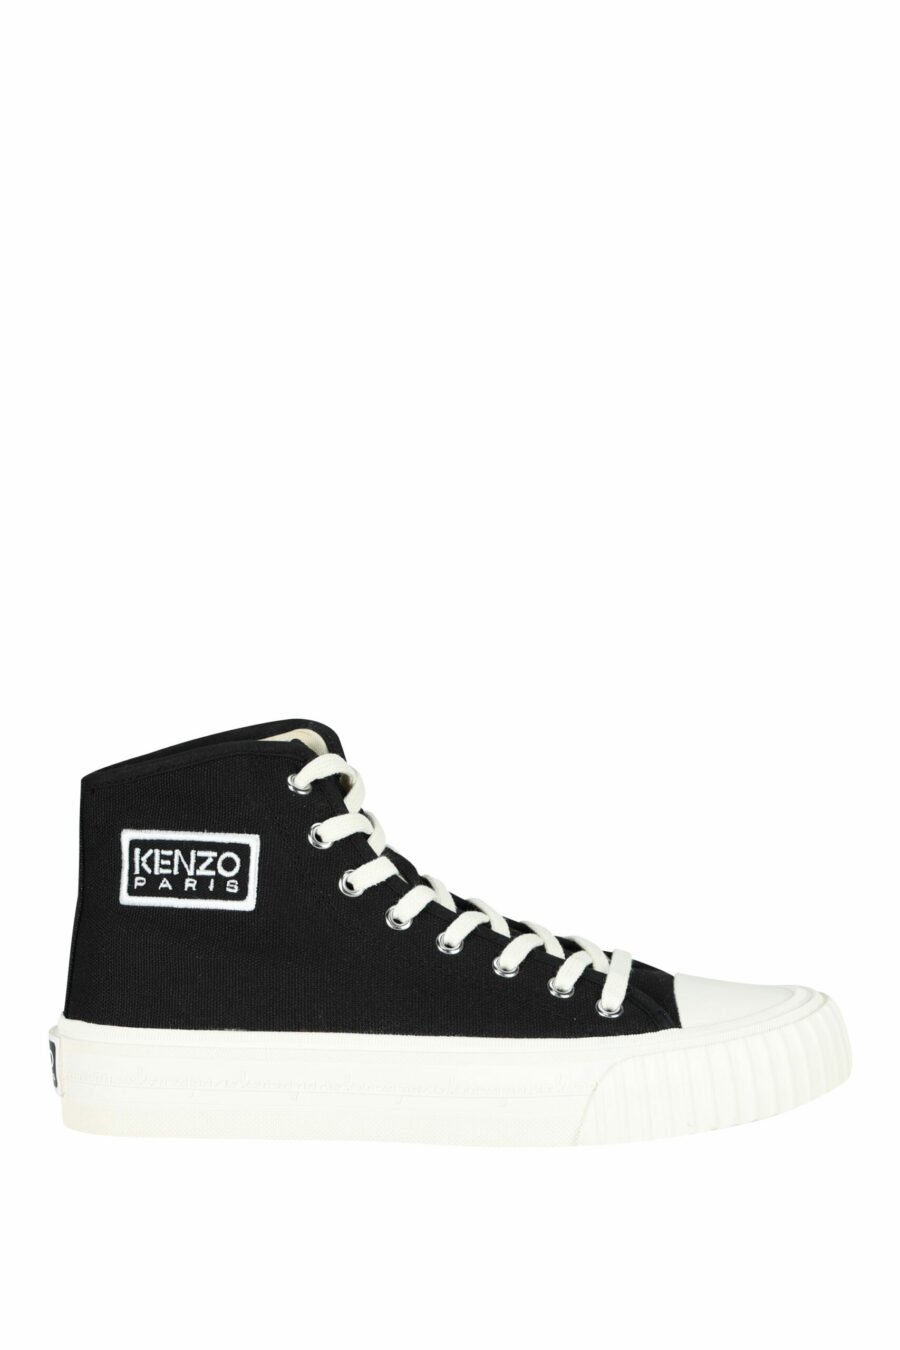 Zapatillas negras altas con logo "kenzo foxy" con logo "tag" - 3612230640009 scaled